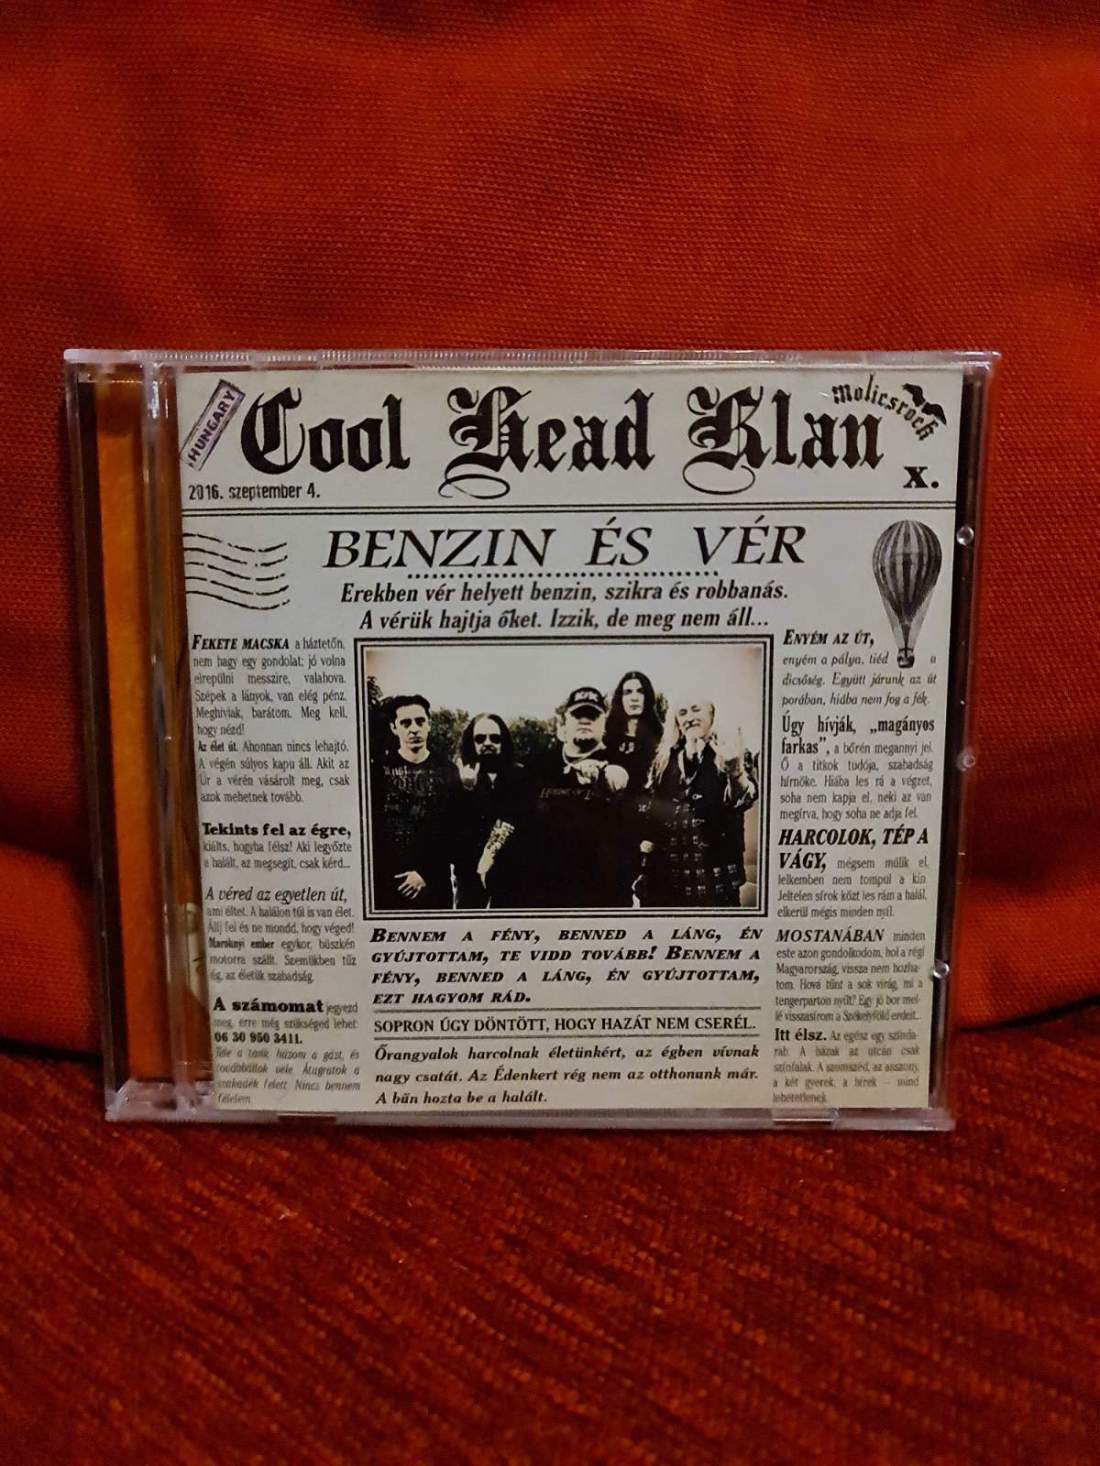 COOL HEAD KLAN - BENZIN ÉS VÉR CD